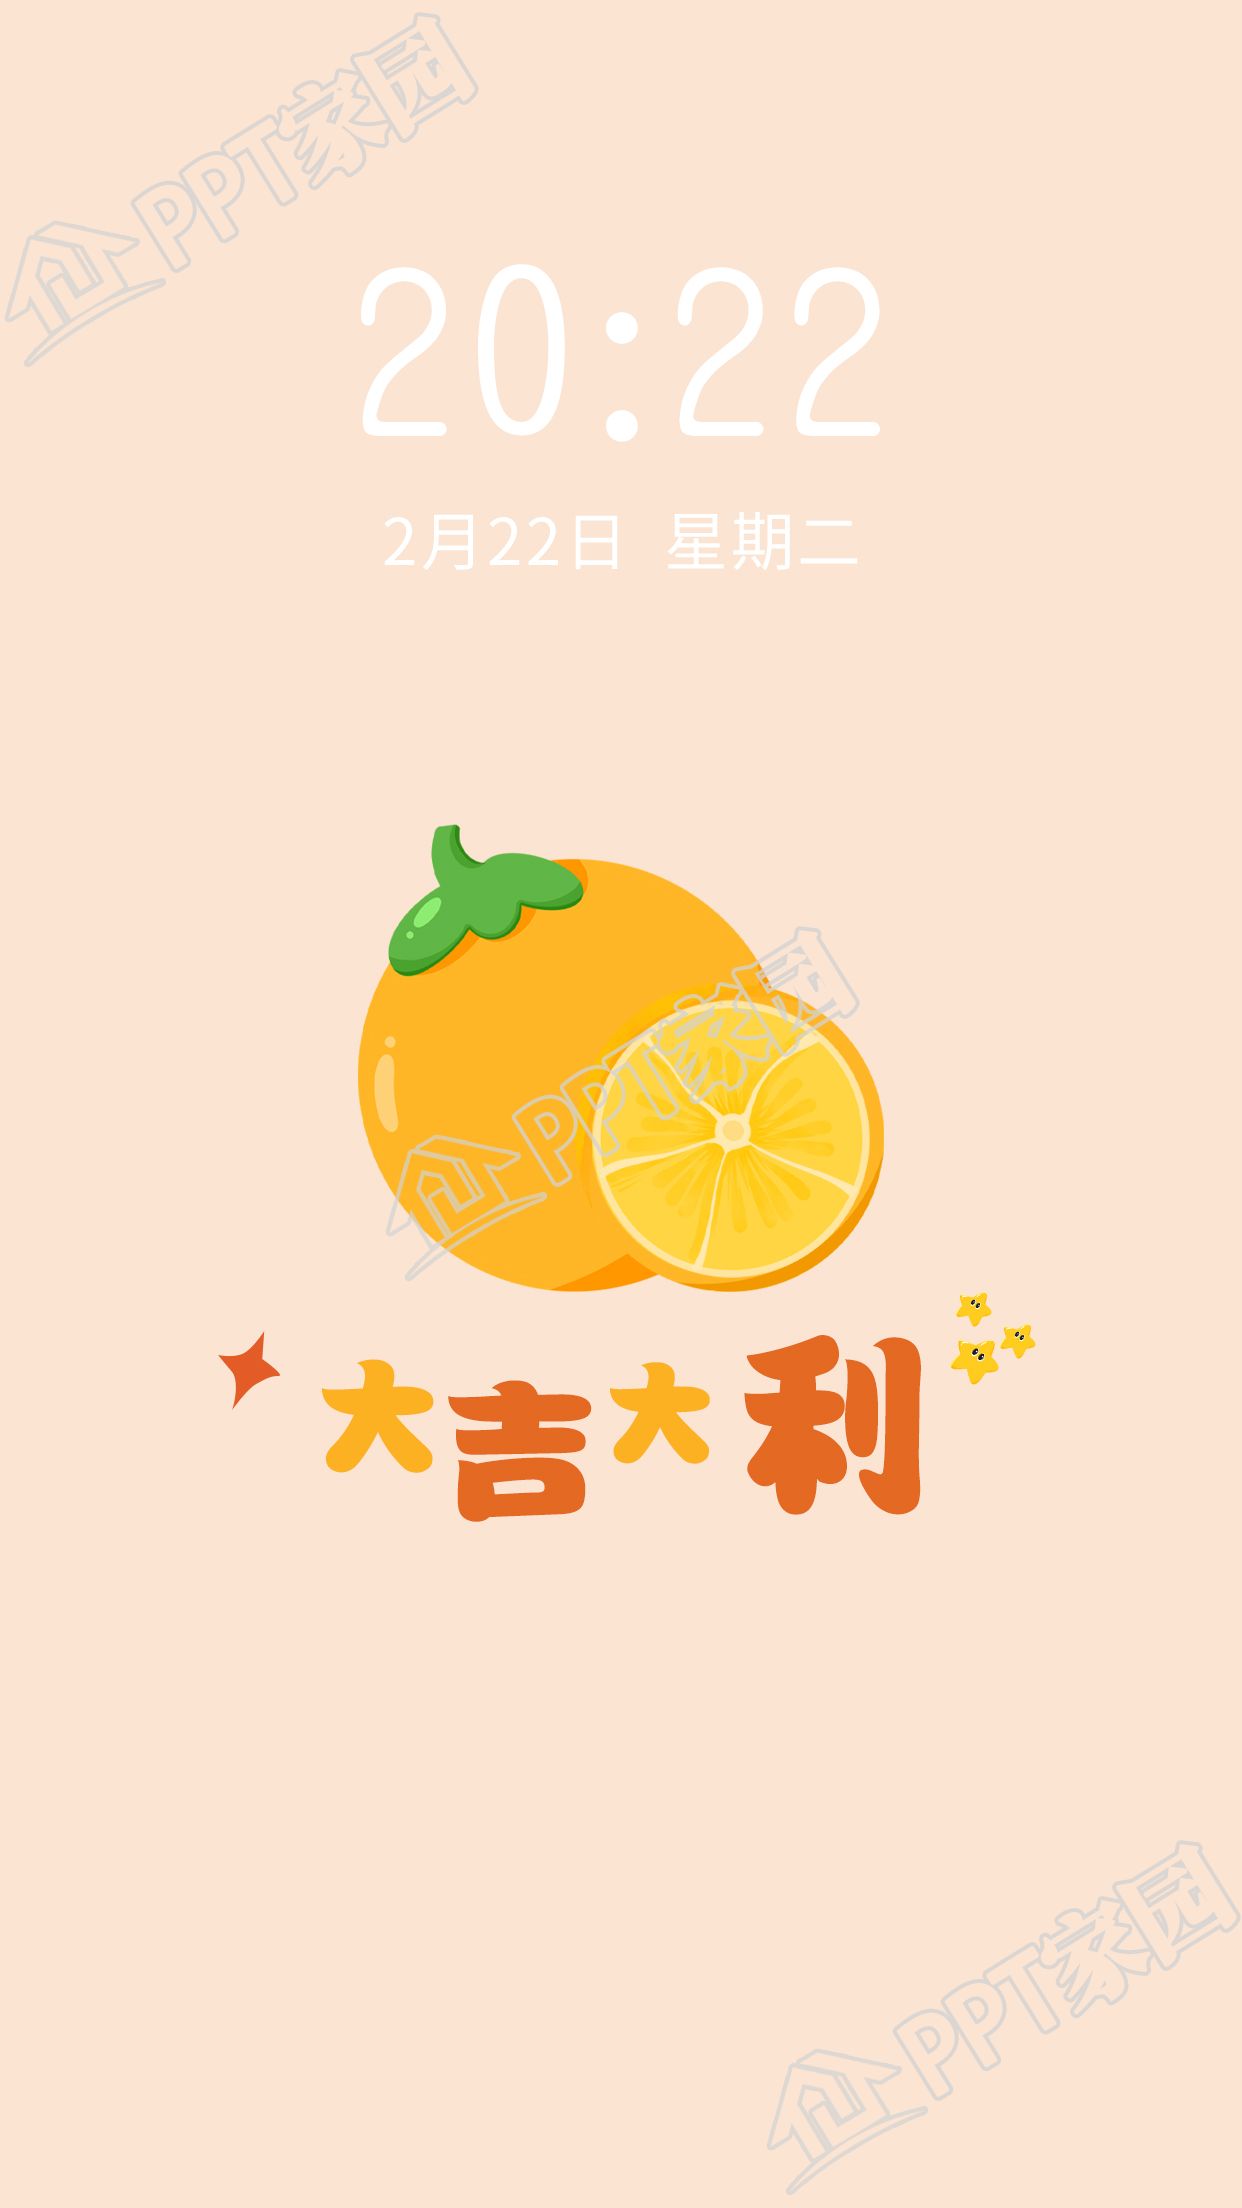 橘子水果主题大吉大利寓意手机壁纸下载推荐